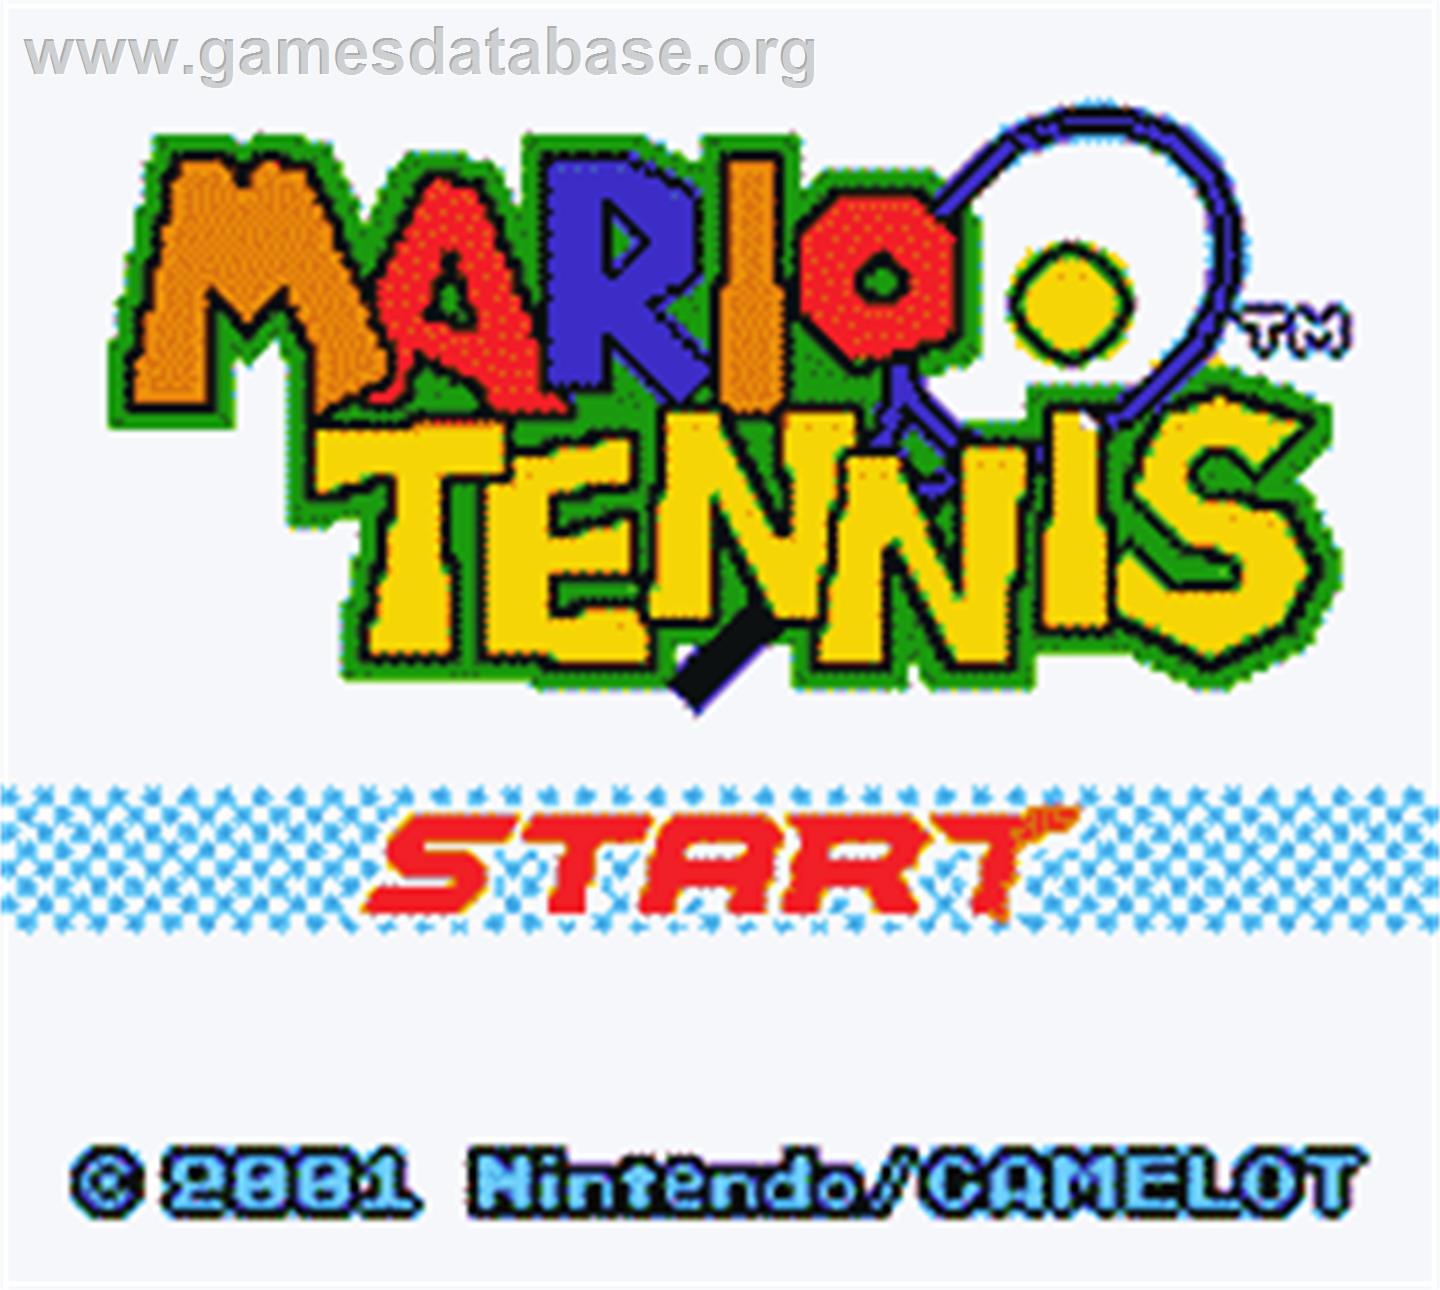 Mario Tennis - Nintendo Game Boy Color - Artwork - Title Screen